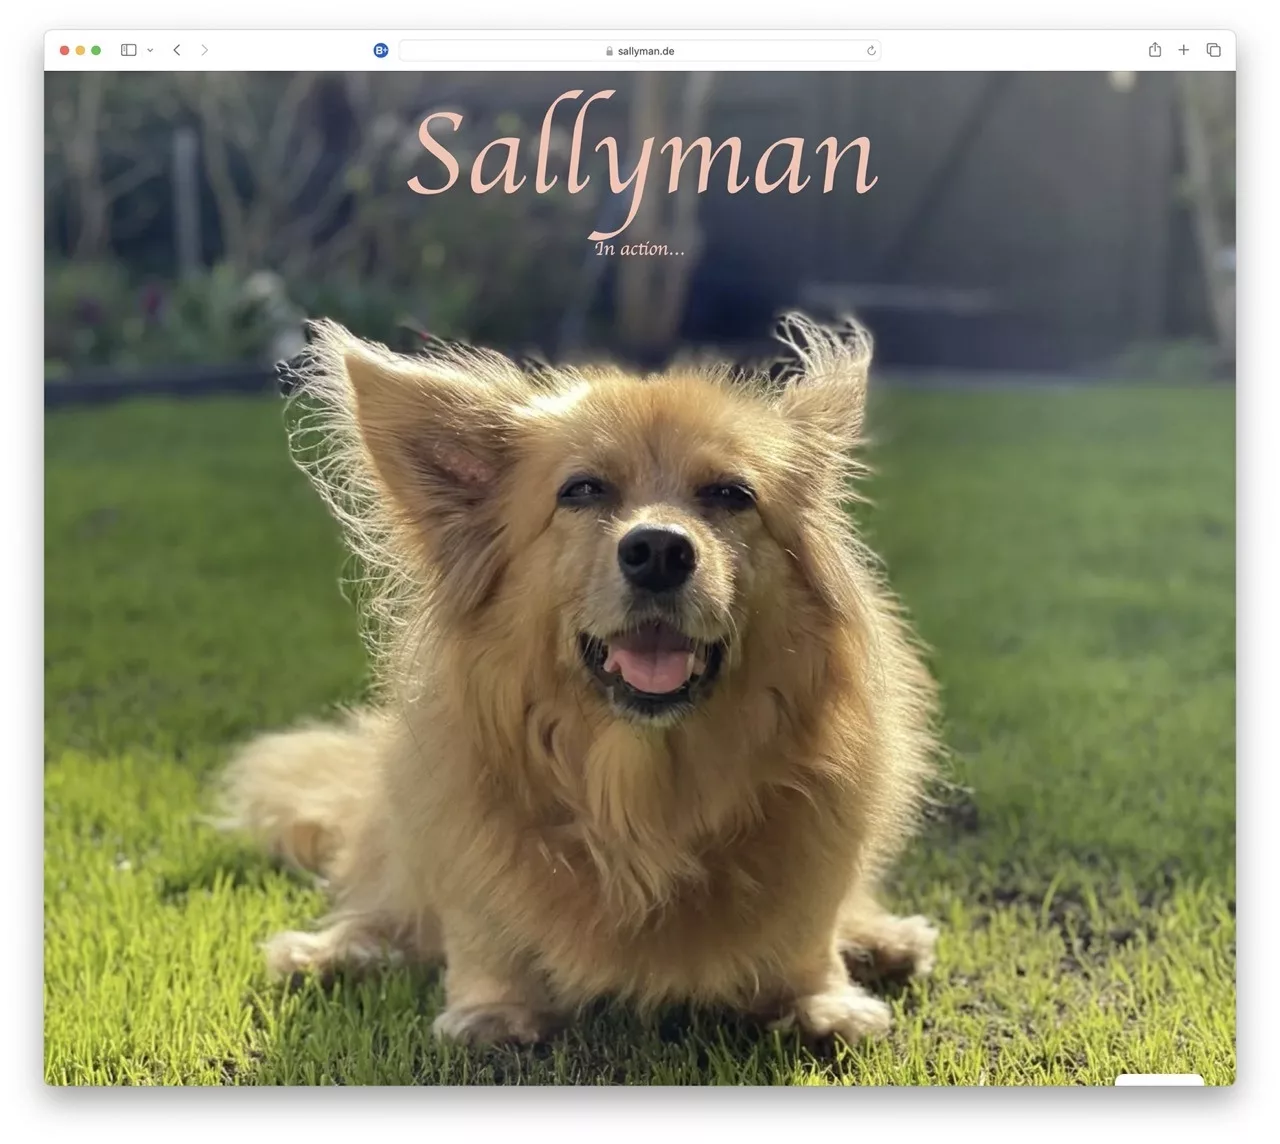 Die Startseite von sallyman.de mit Sally auf dem Rasen.